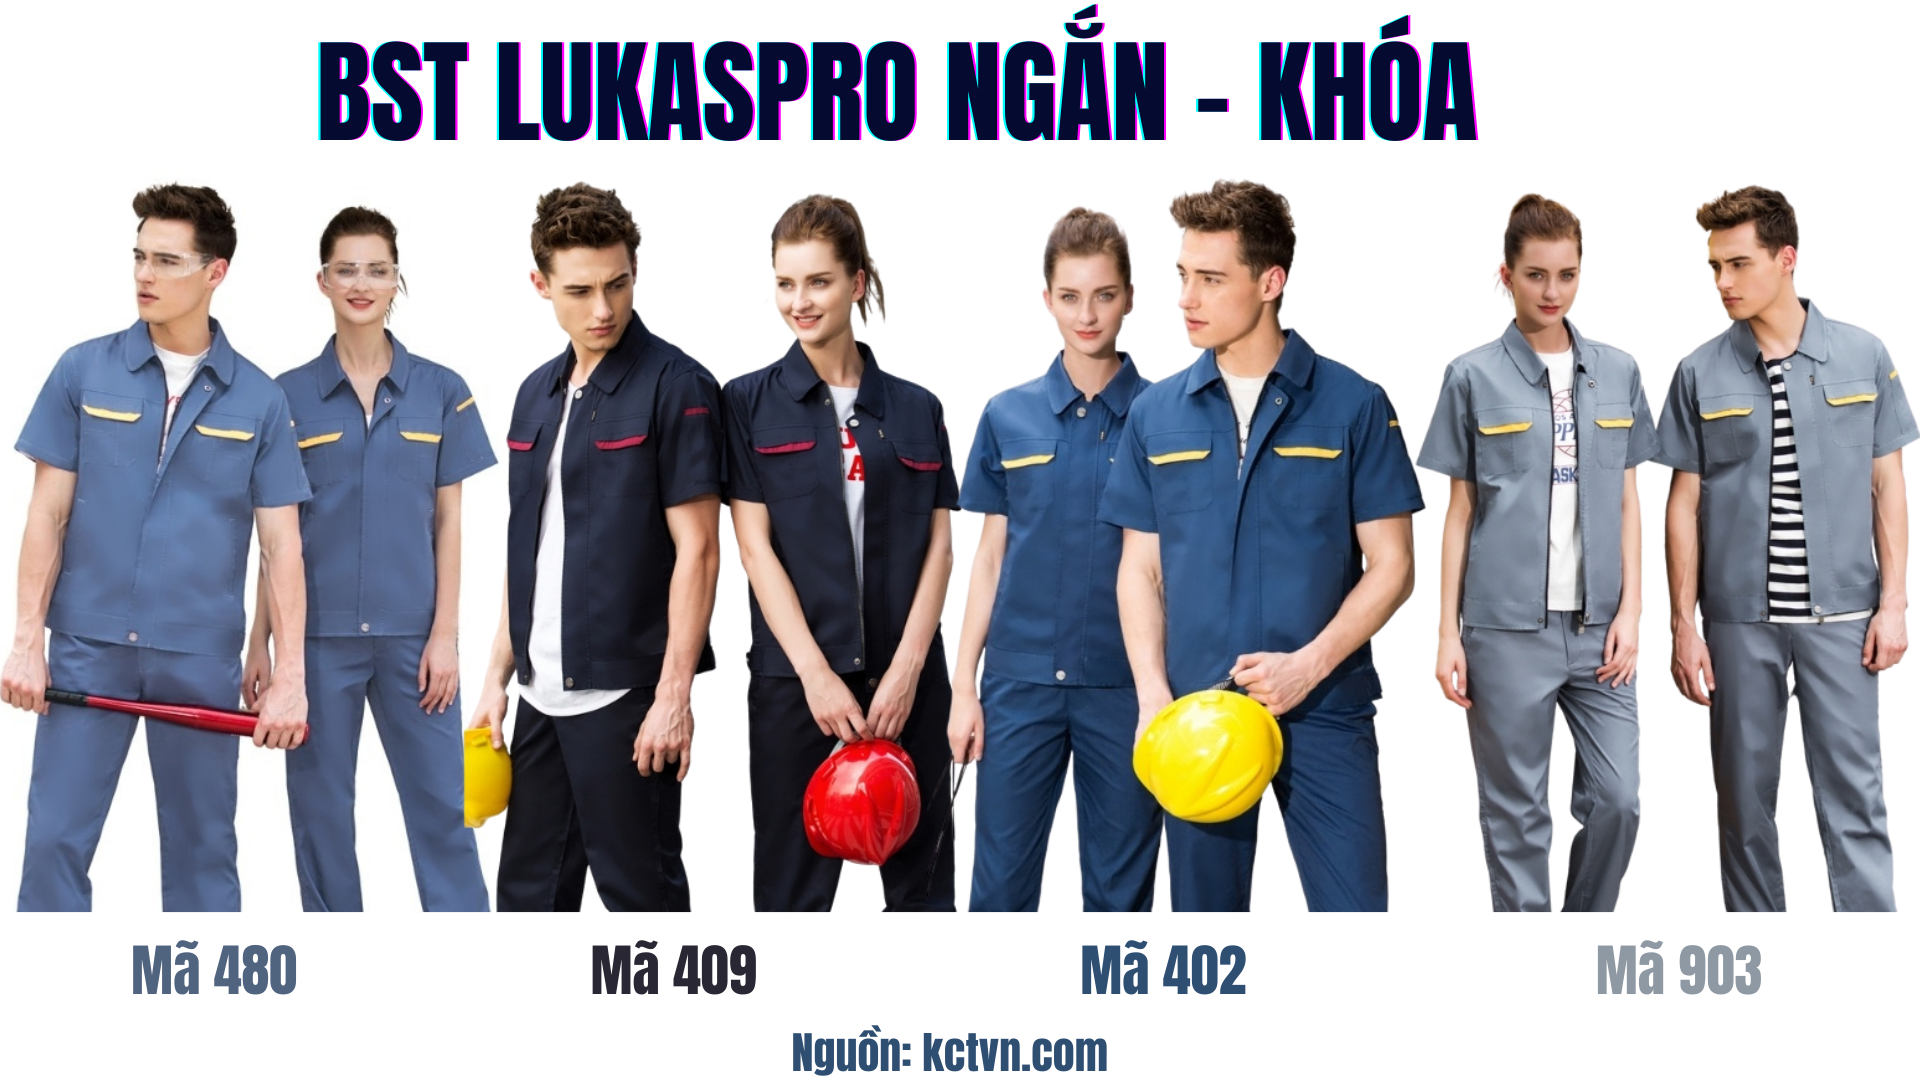 Các mẫu quần áo bảo hộ lao động Lukaspro chính hãng Ngắn khóa